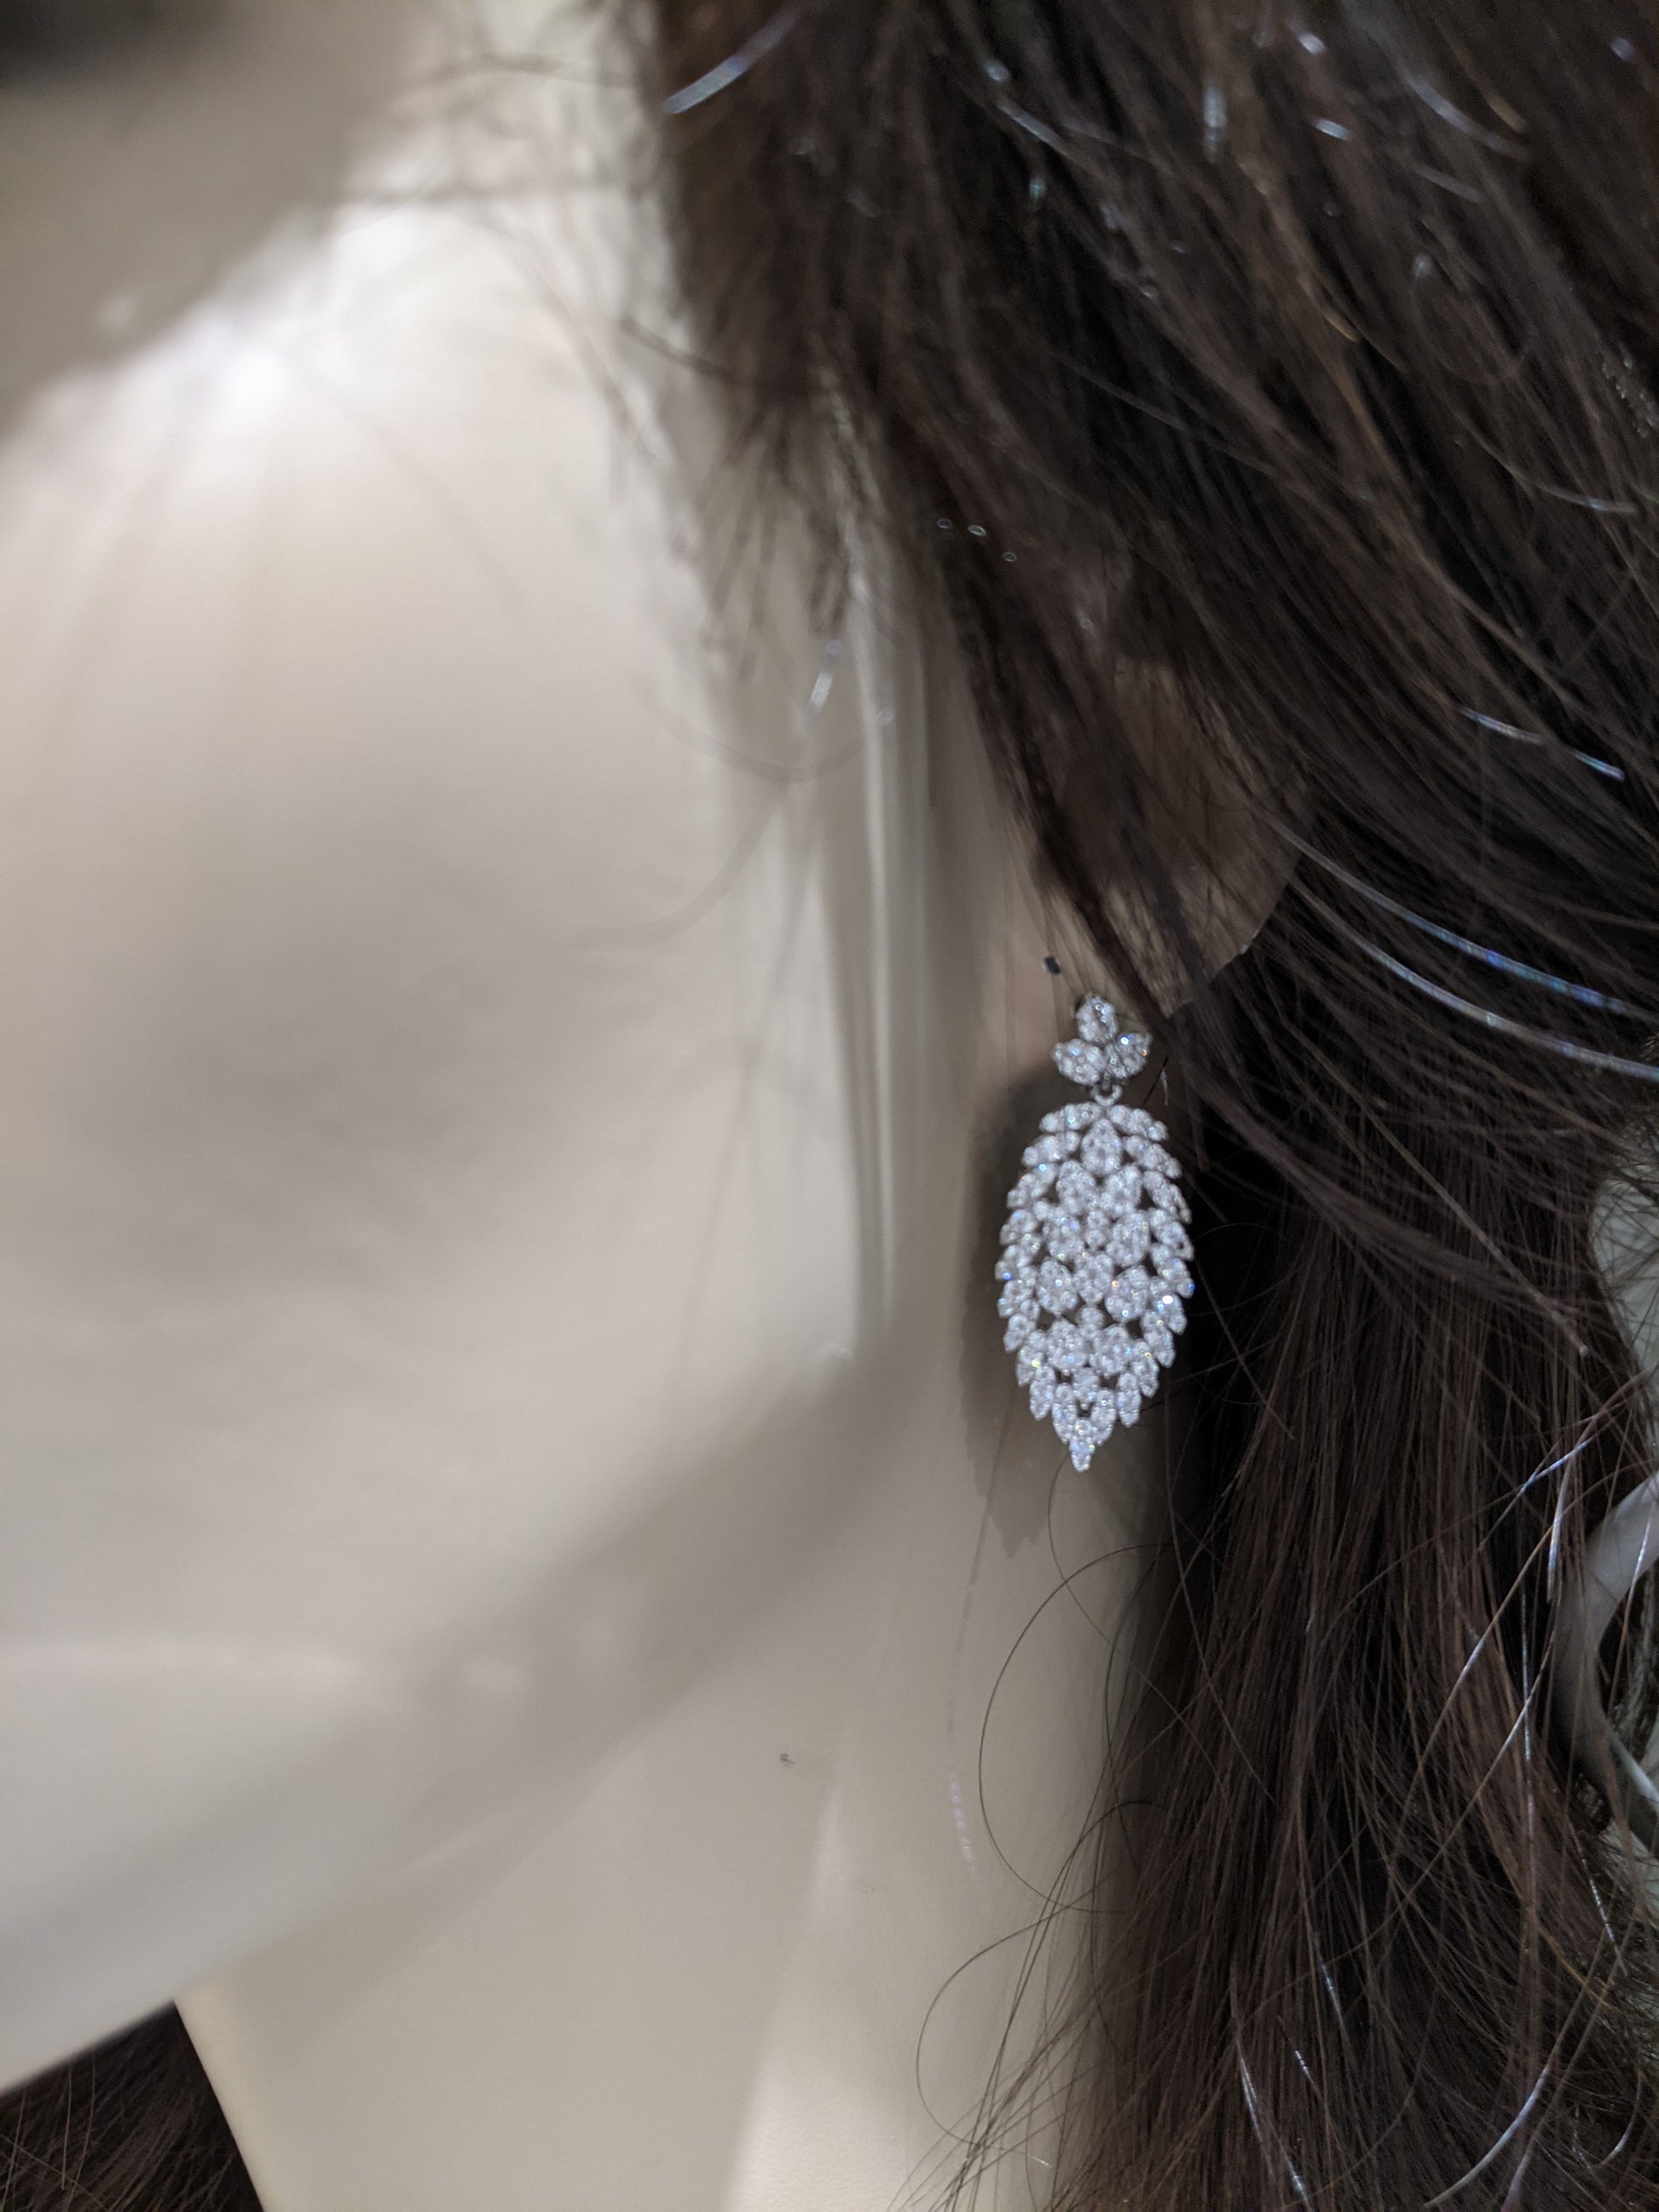 Sterling Silver Leaf Earrings - HK Jewels